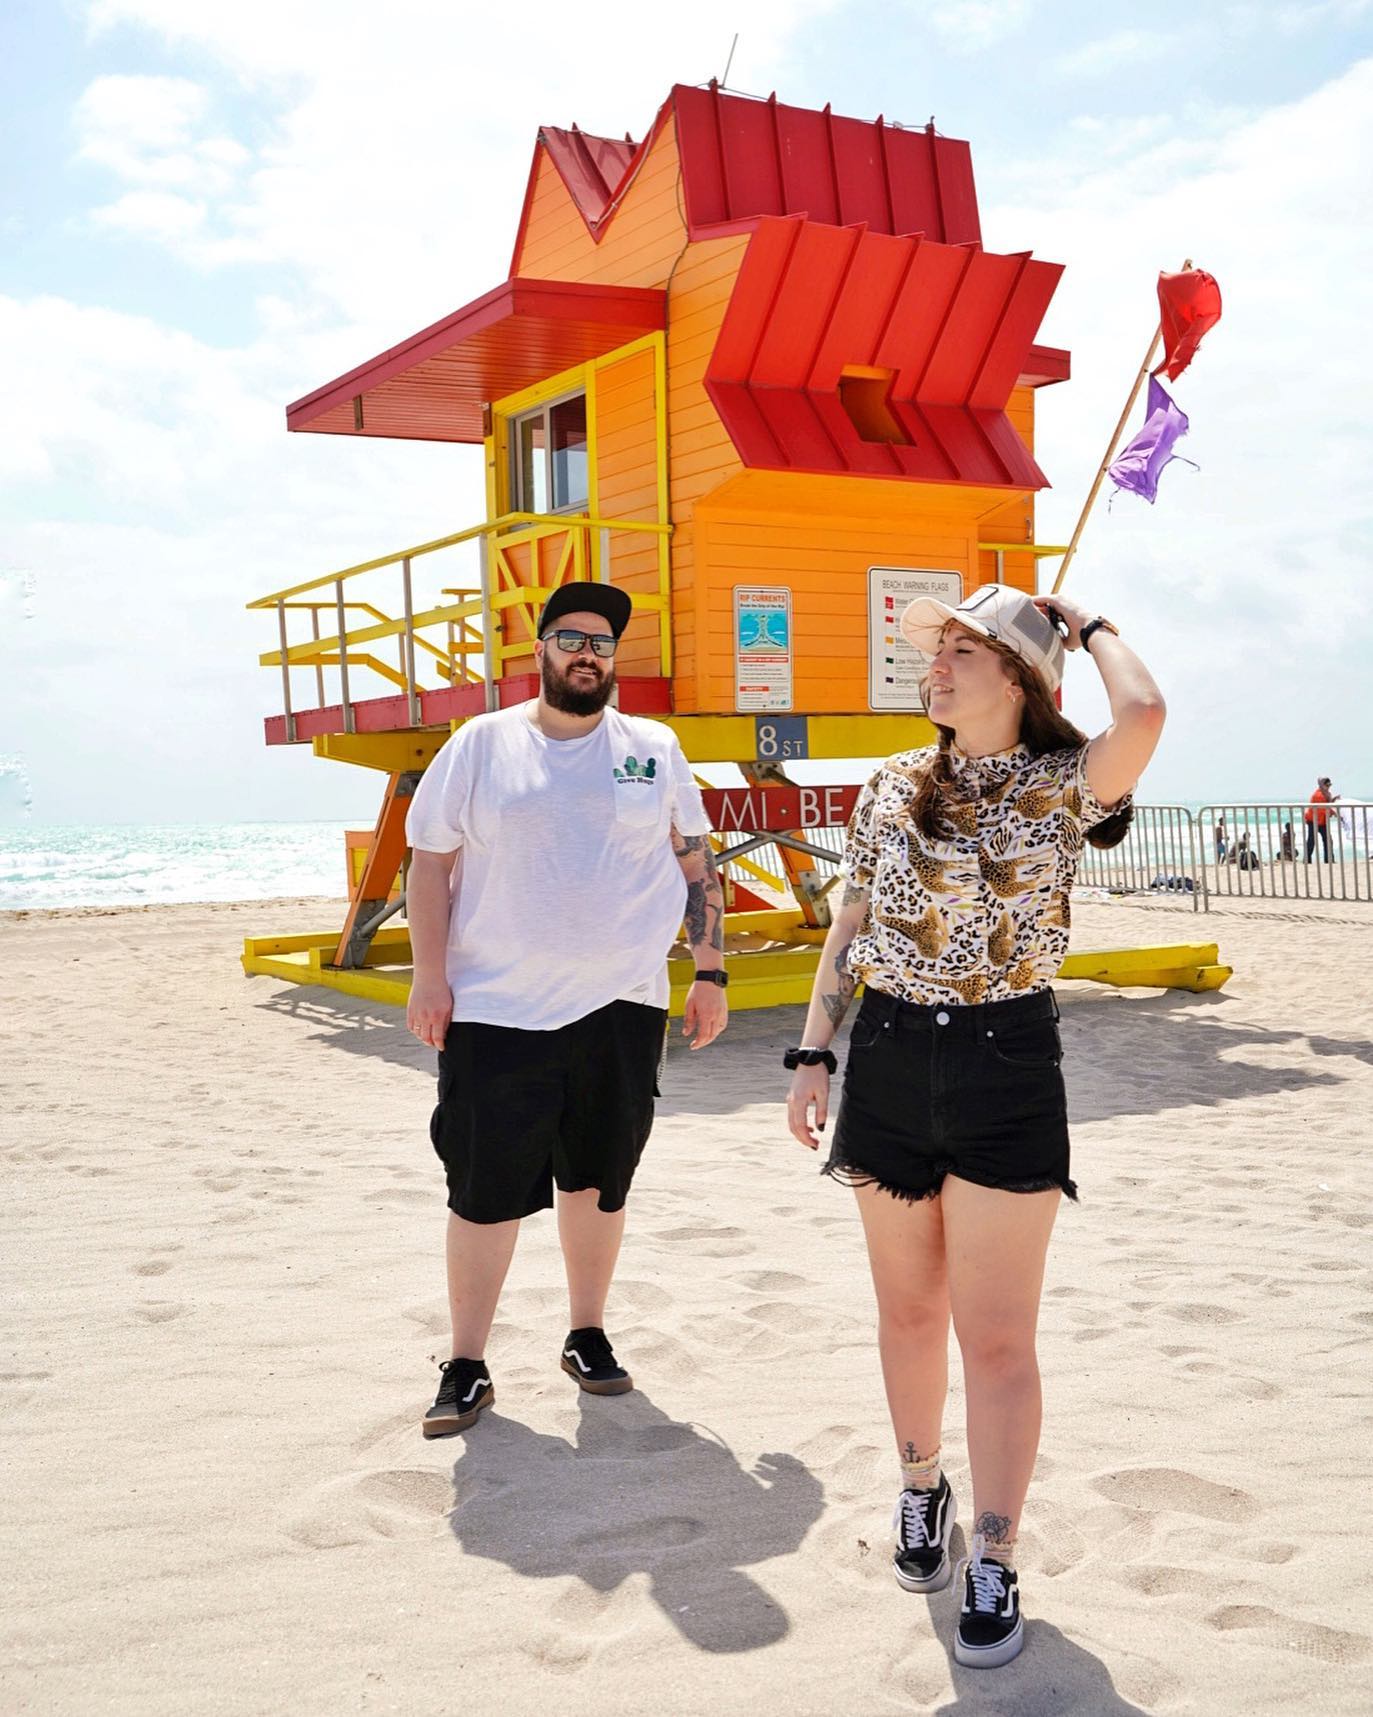 .
🏝¡Estamos en Miami! 🏝
.
No es un secreto que somos muy fans de los Estados Unidos, pero hasta hace poco no nos habíamos imaginado venir a Florida.
.
Los últimos viajes de frío han hecho un poco de mella en nosotros y buscábamos un sitio con un buen clima. Y como imaginábamos, ya nos estamos quejando el primer día del calor que hace🤣
.
Os vamos enseñando algunas cosas por stories!✨
.
#globetrotter #viajesglobetrotter #travelblog #travelblogger #wanderlust #travelcouples #travelcouple #mondofotodelmes #iamtb #miami #miamibeach #holidayguru #viajandoconcivitatis